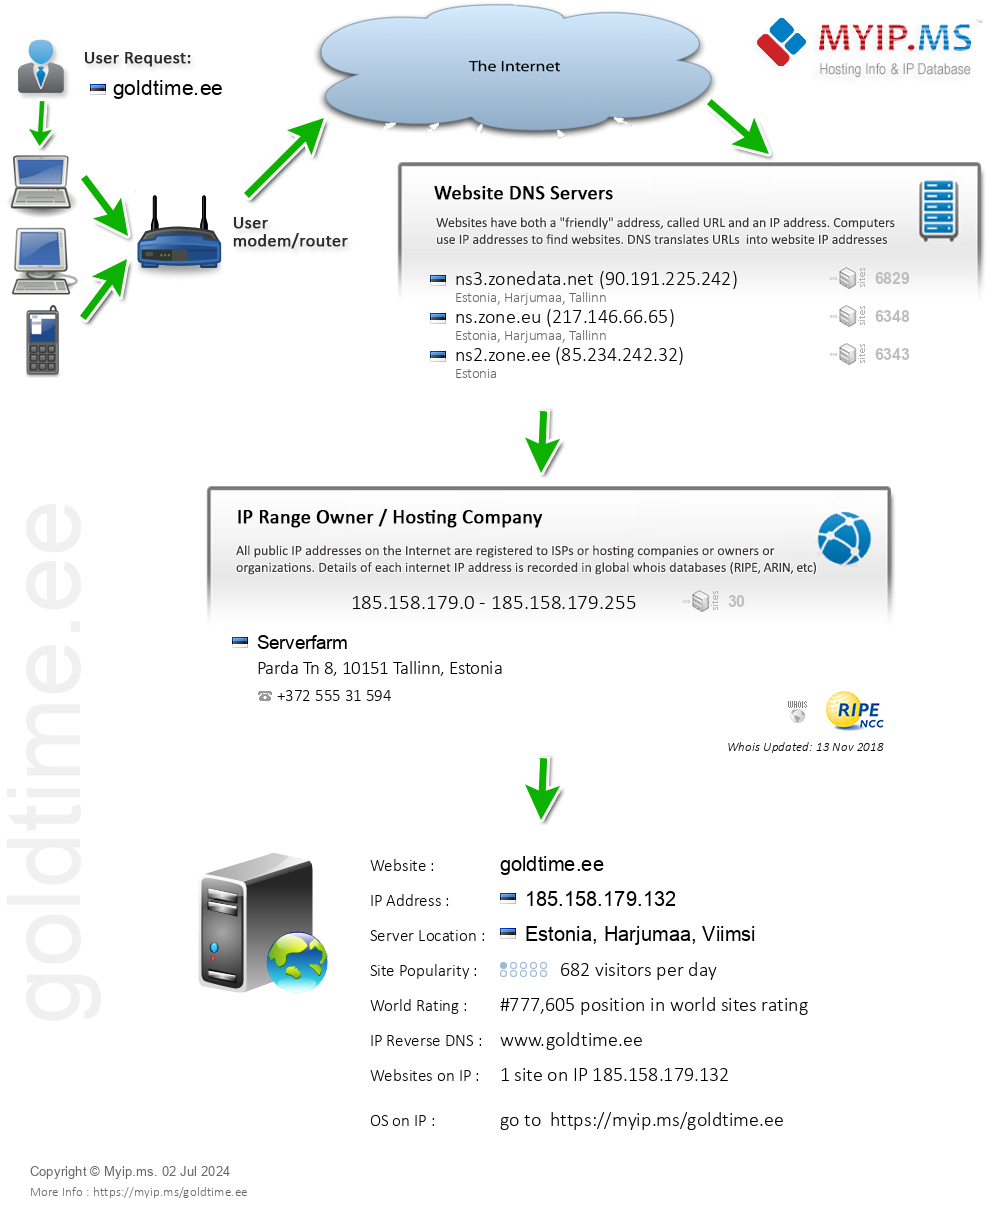 Goldtime.ee - Website Hosting Visual IP Diagram